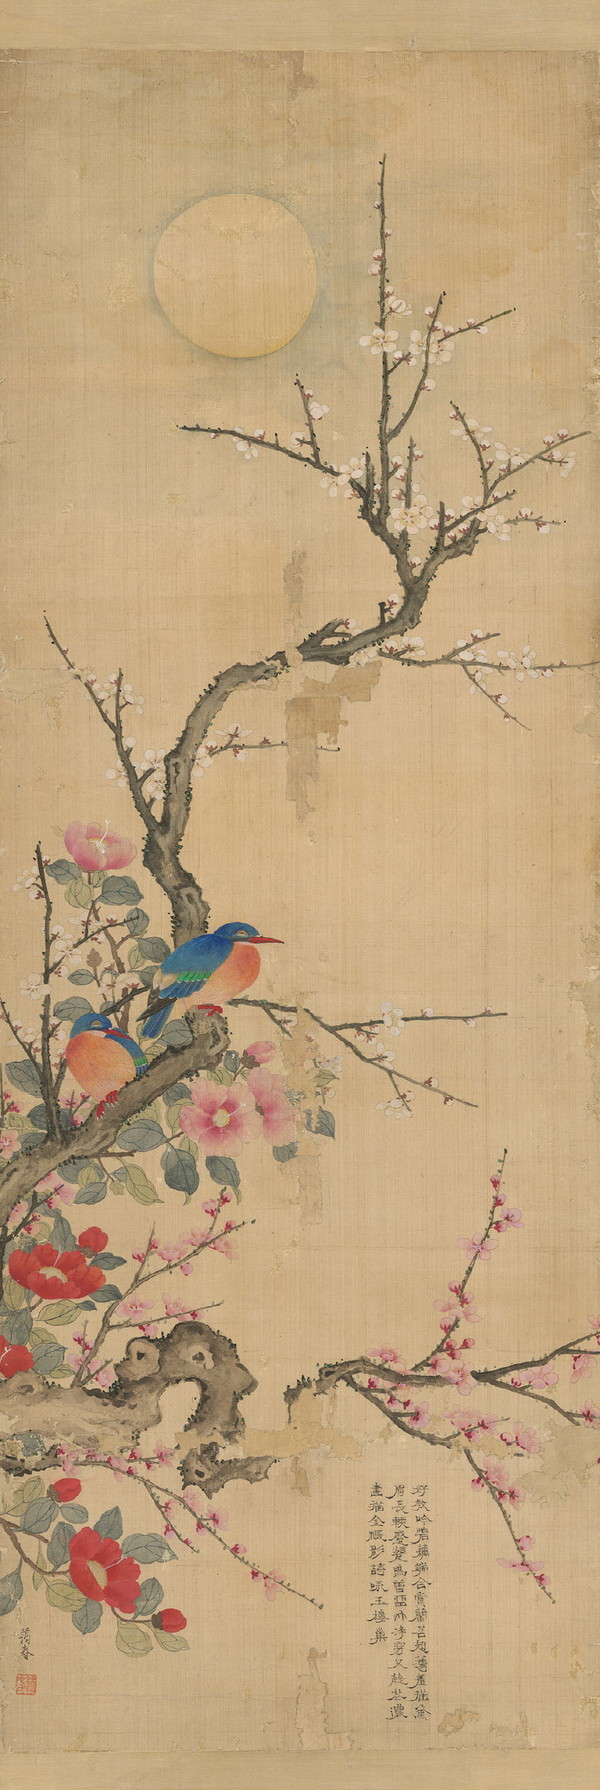 꽃과 새, 신명연申命衍(1809~1886), 조선 19세기, 비단에 채색, 국립중앙박물관